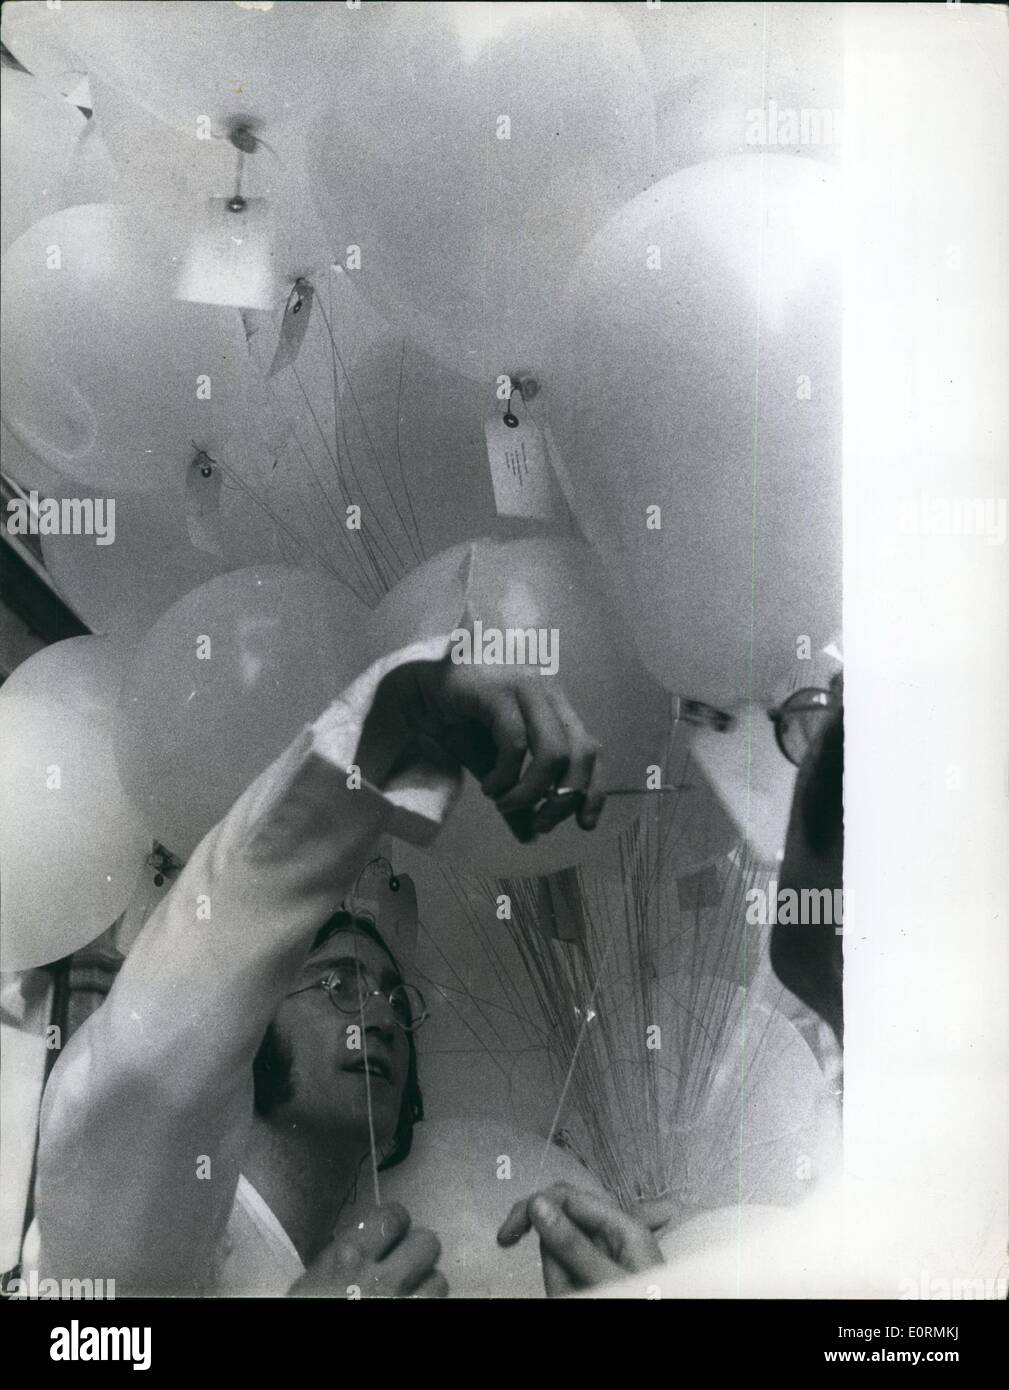 Jan 1, 1960 ballons - exposition d'art de Londres ouverte : John Lennon hier dans l'exposition d'art Galerie Fraser. Duc en libérant 365 blanc, rempli de gaz ''(illisible)'' des ballons. ''(Illisible)'' de l'ouverture de l'exposition était son ''(illisible)'' à fond. L'exposition se composait de ''(illisible)'' des boîtes et une peinture d'une pièce circulaire ''(illisible)'' peint en blanc avec les mots que vous êtes ici ''(illisible)'' l'écriture de John Lennon. Aussi parmi les ''(illisible)'' white hat trilby, avec un avis de la lecture de ''(illisible)'' John Lennon publie certaines des 365 ballons. Banque D'Images